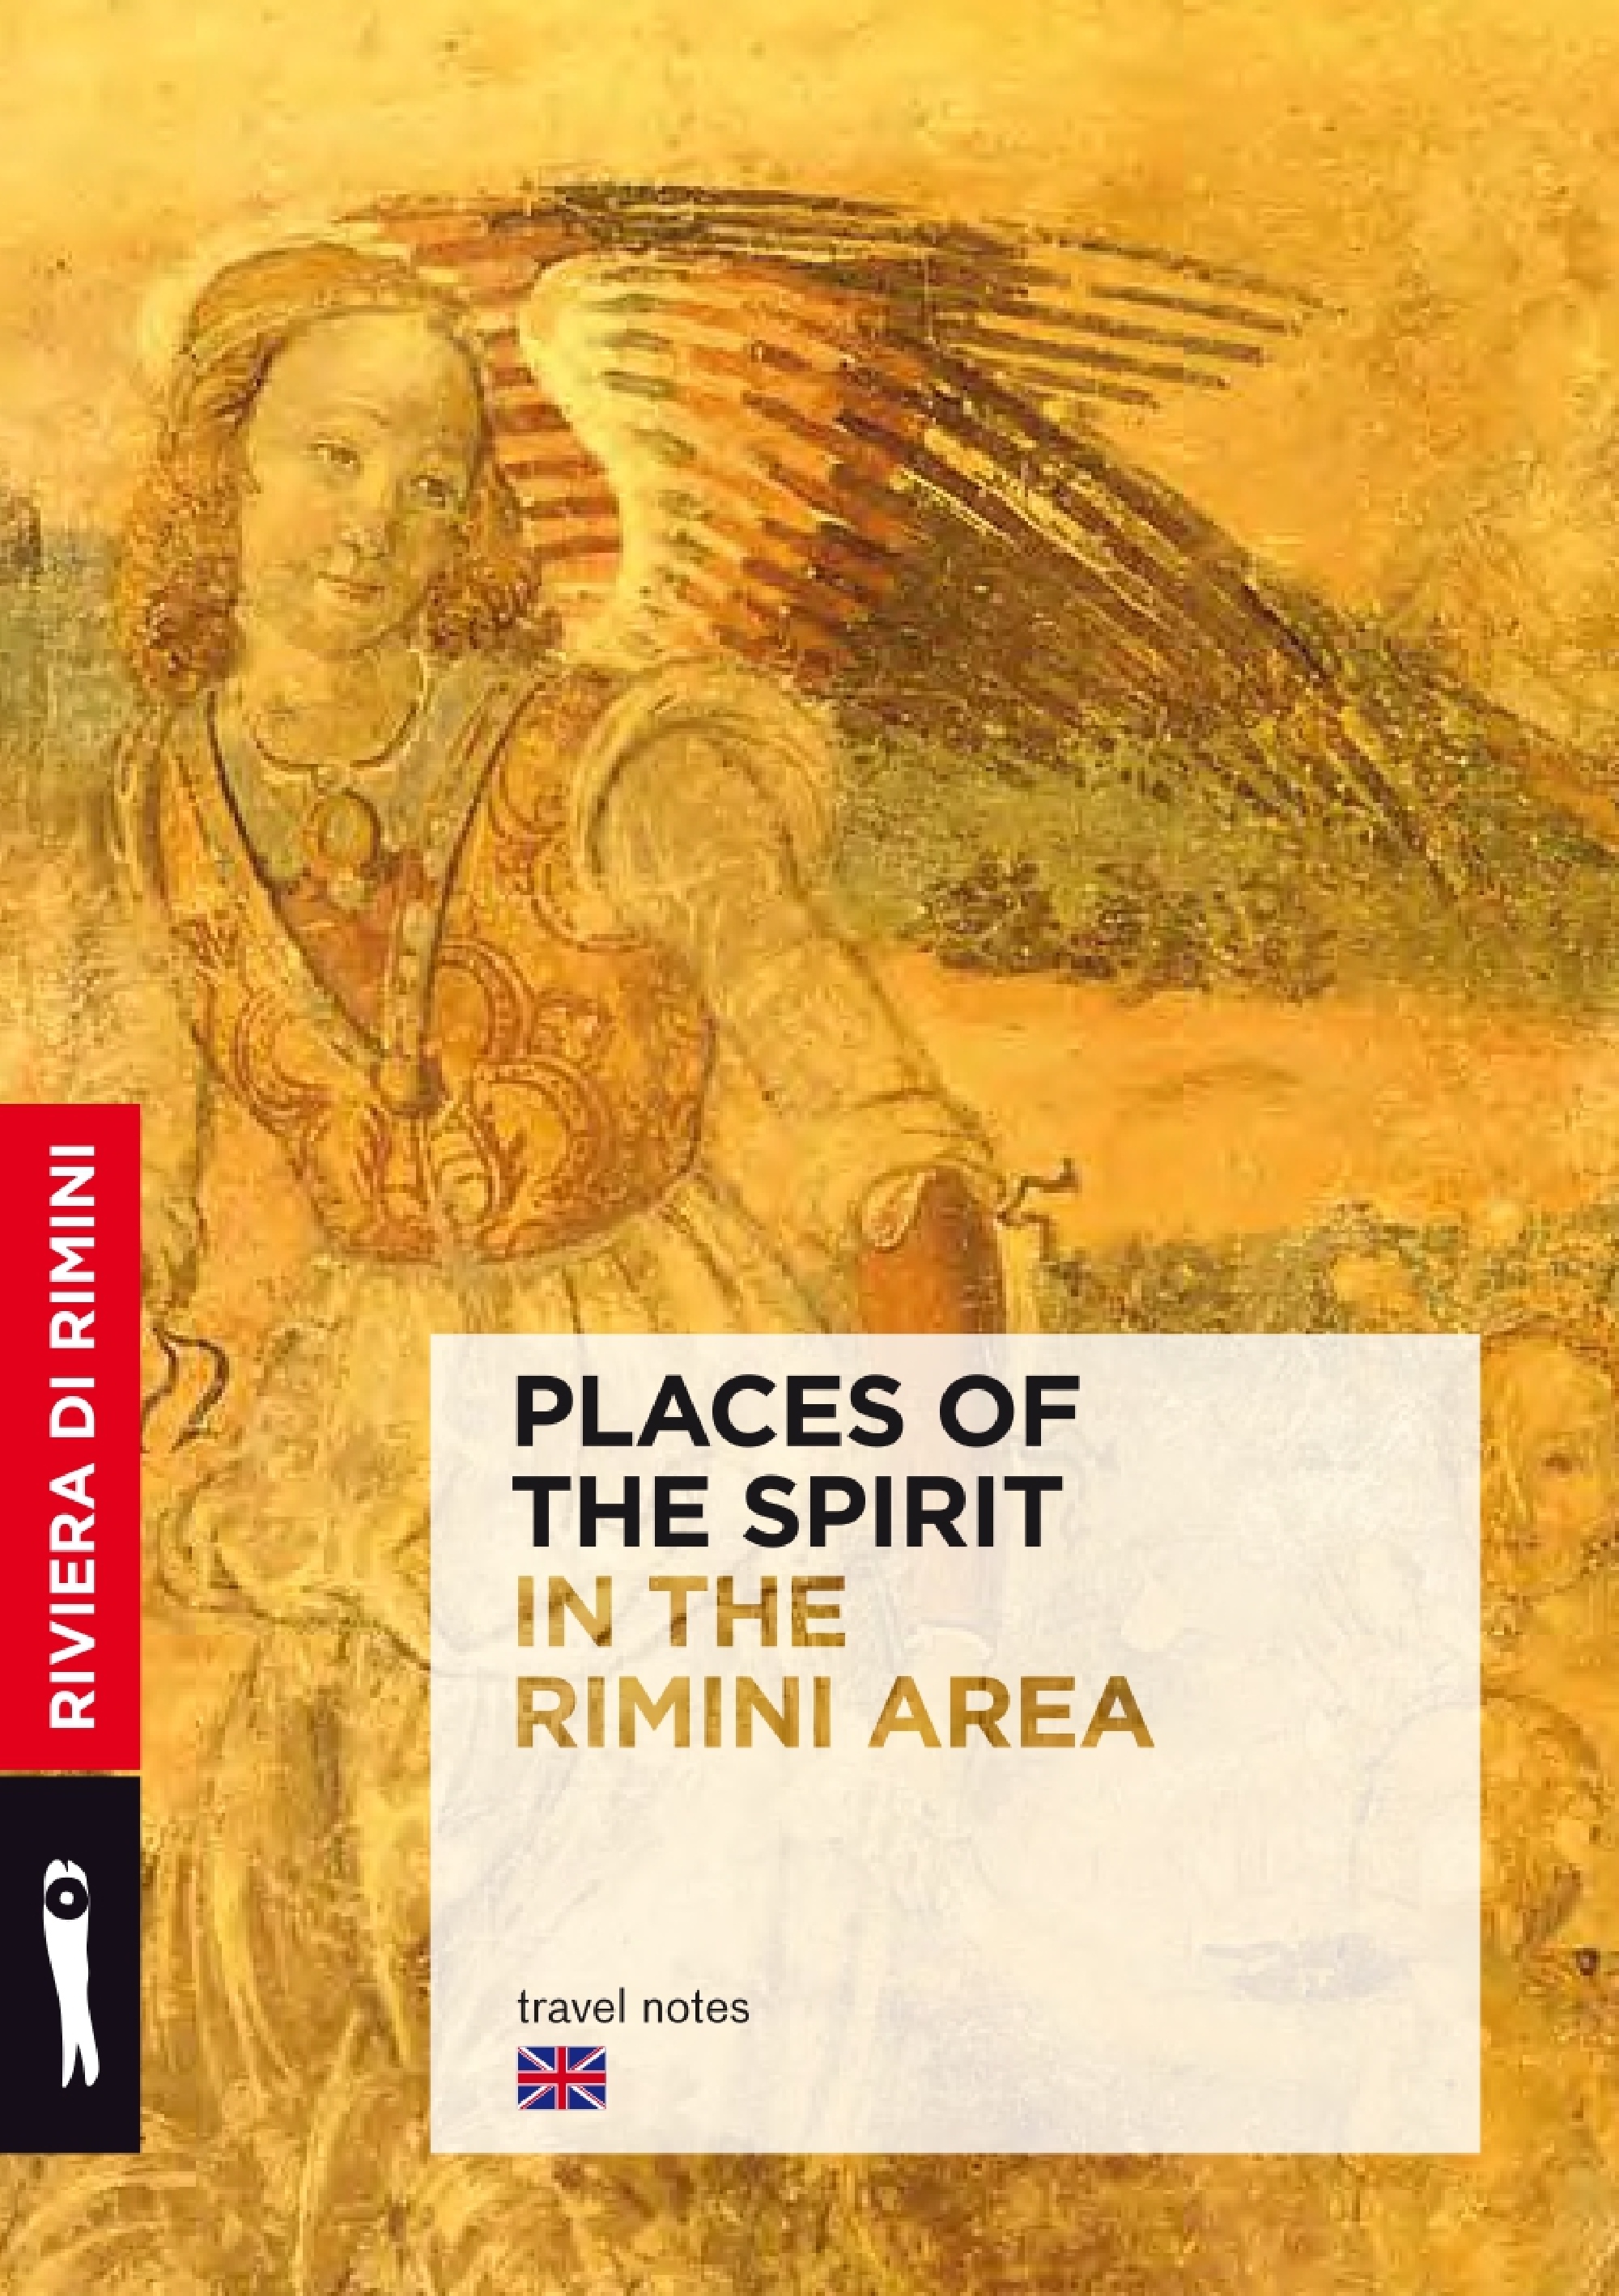 PDF: Places of the spirit EN 7.76M